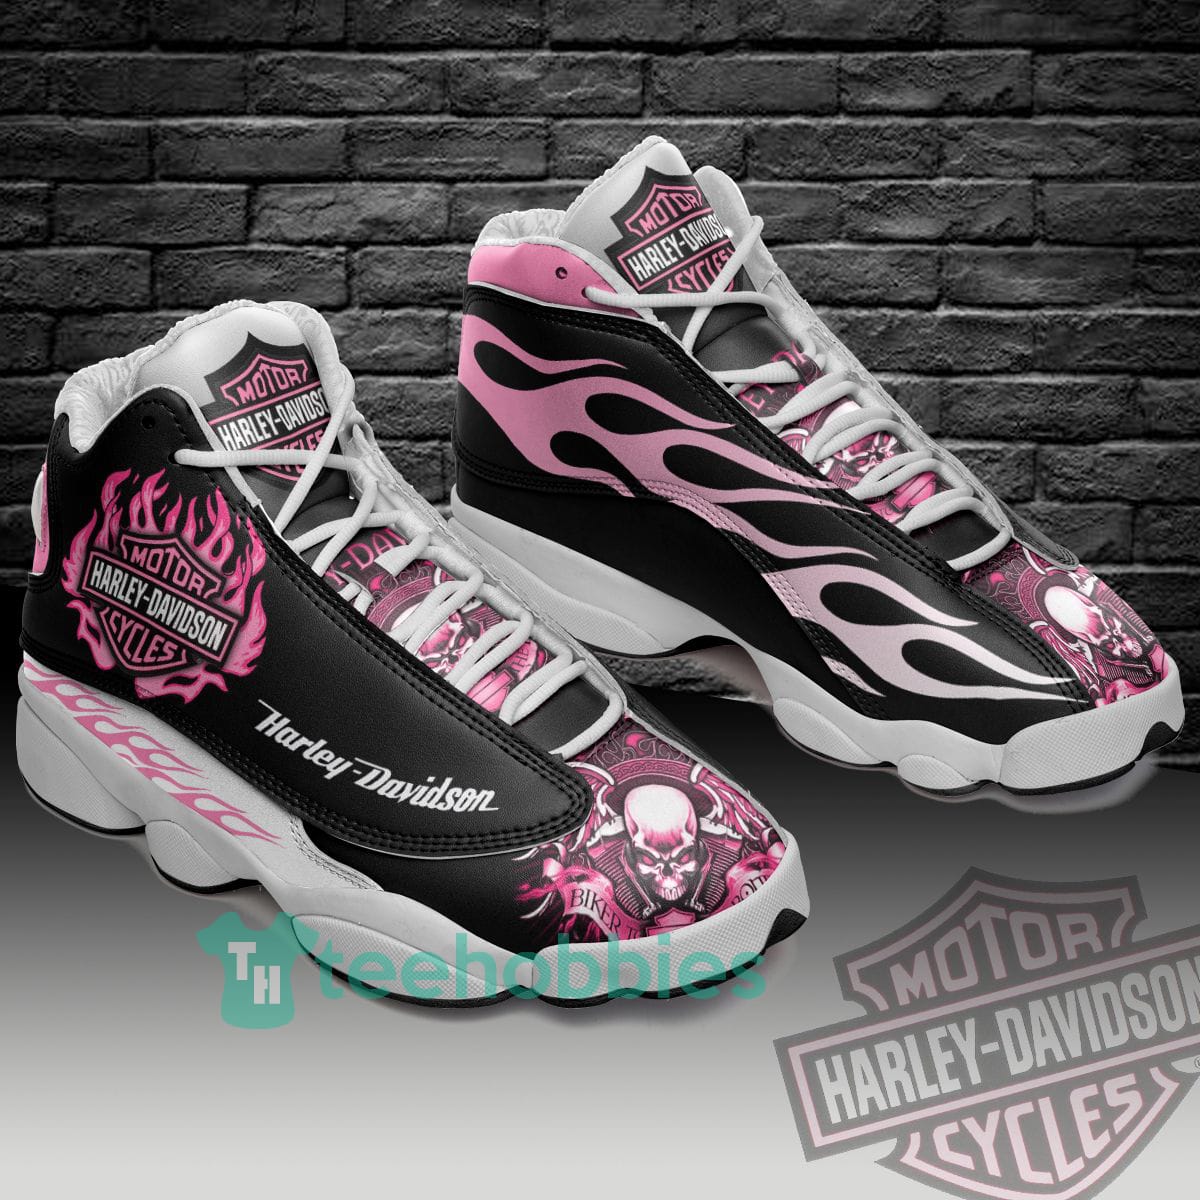 Harley Davidson Skull Pink And Black Air Jordan 13 Sneaker Shoes